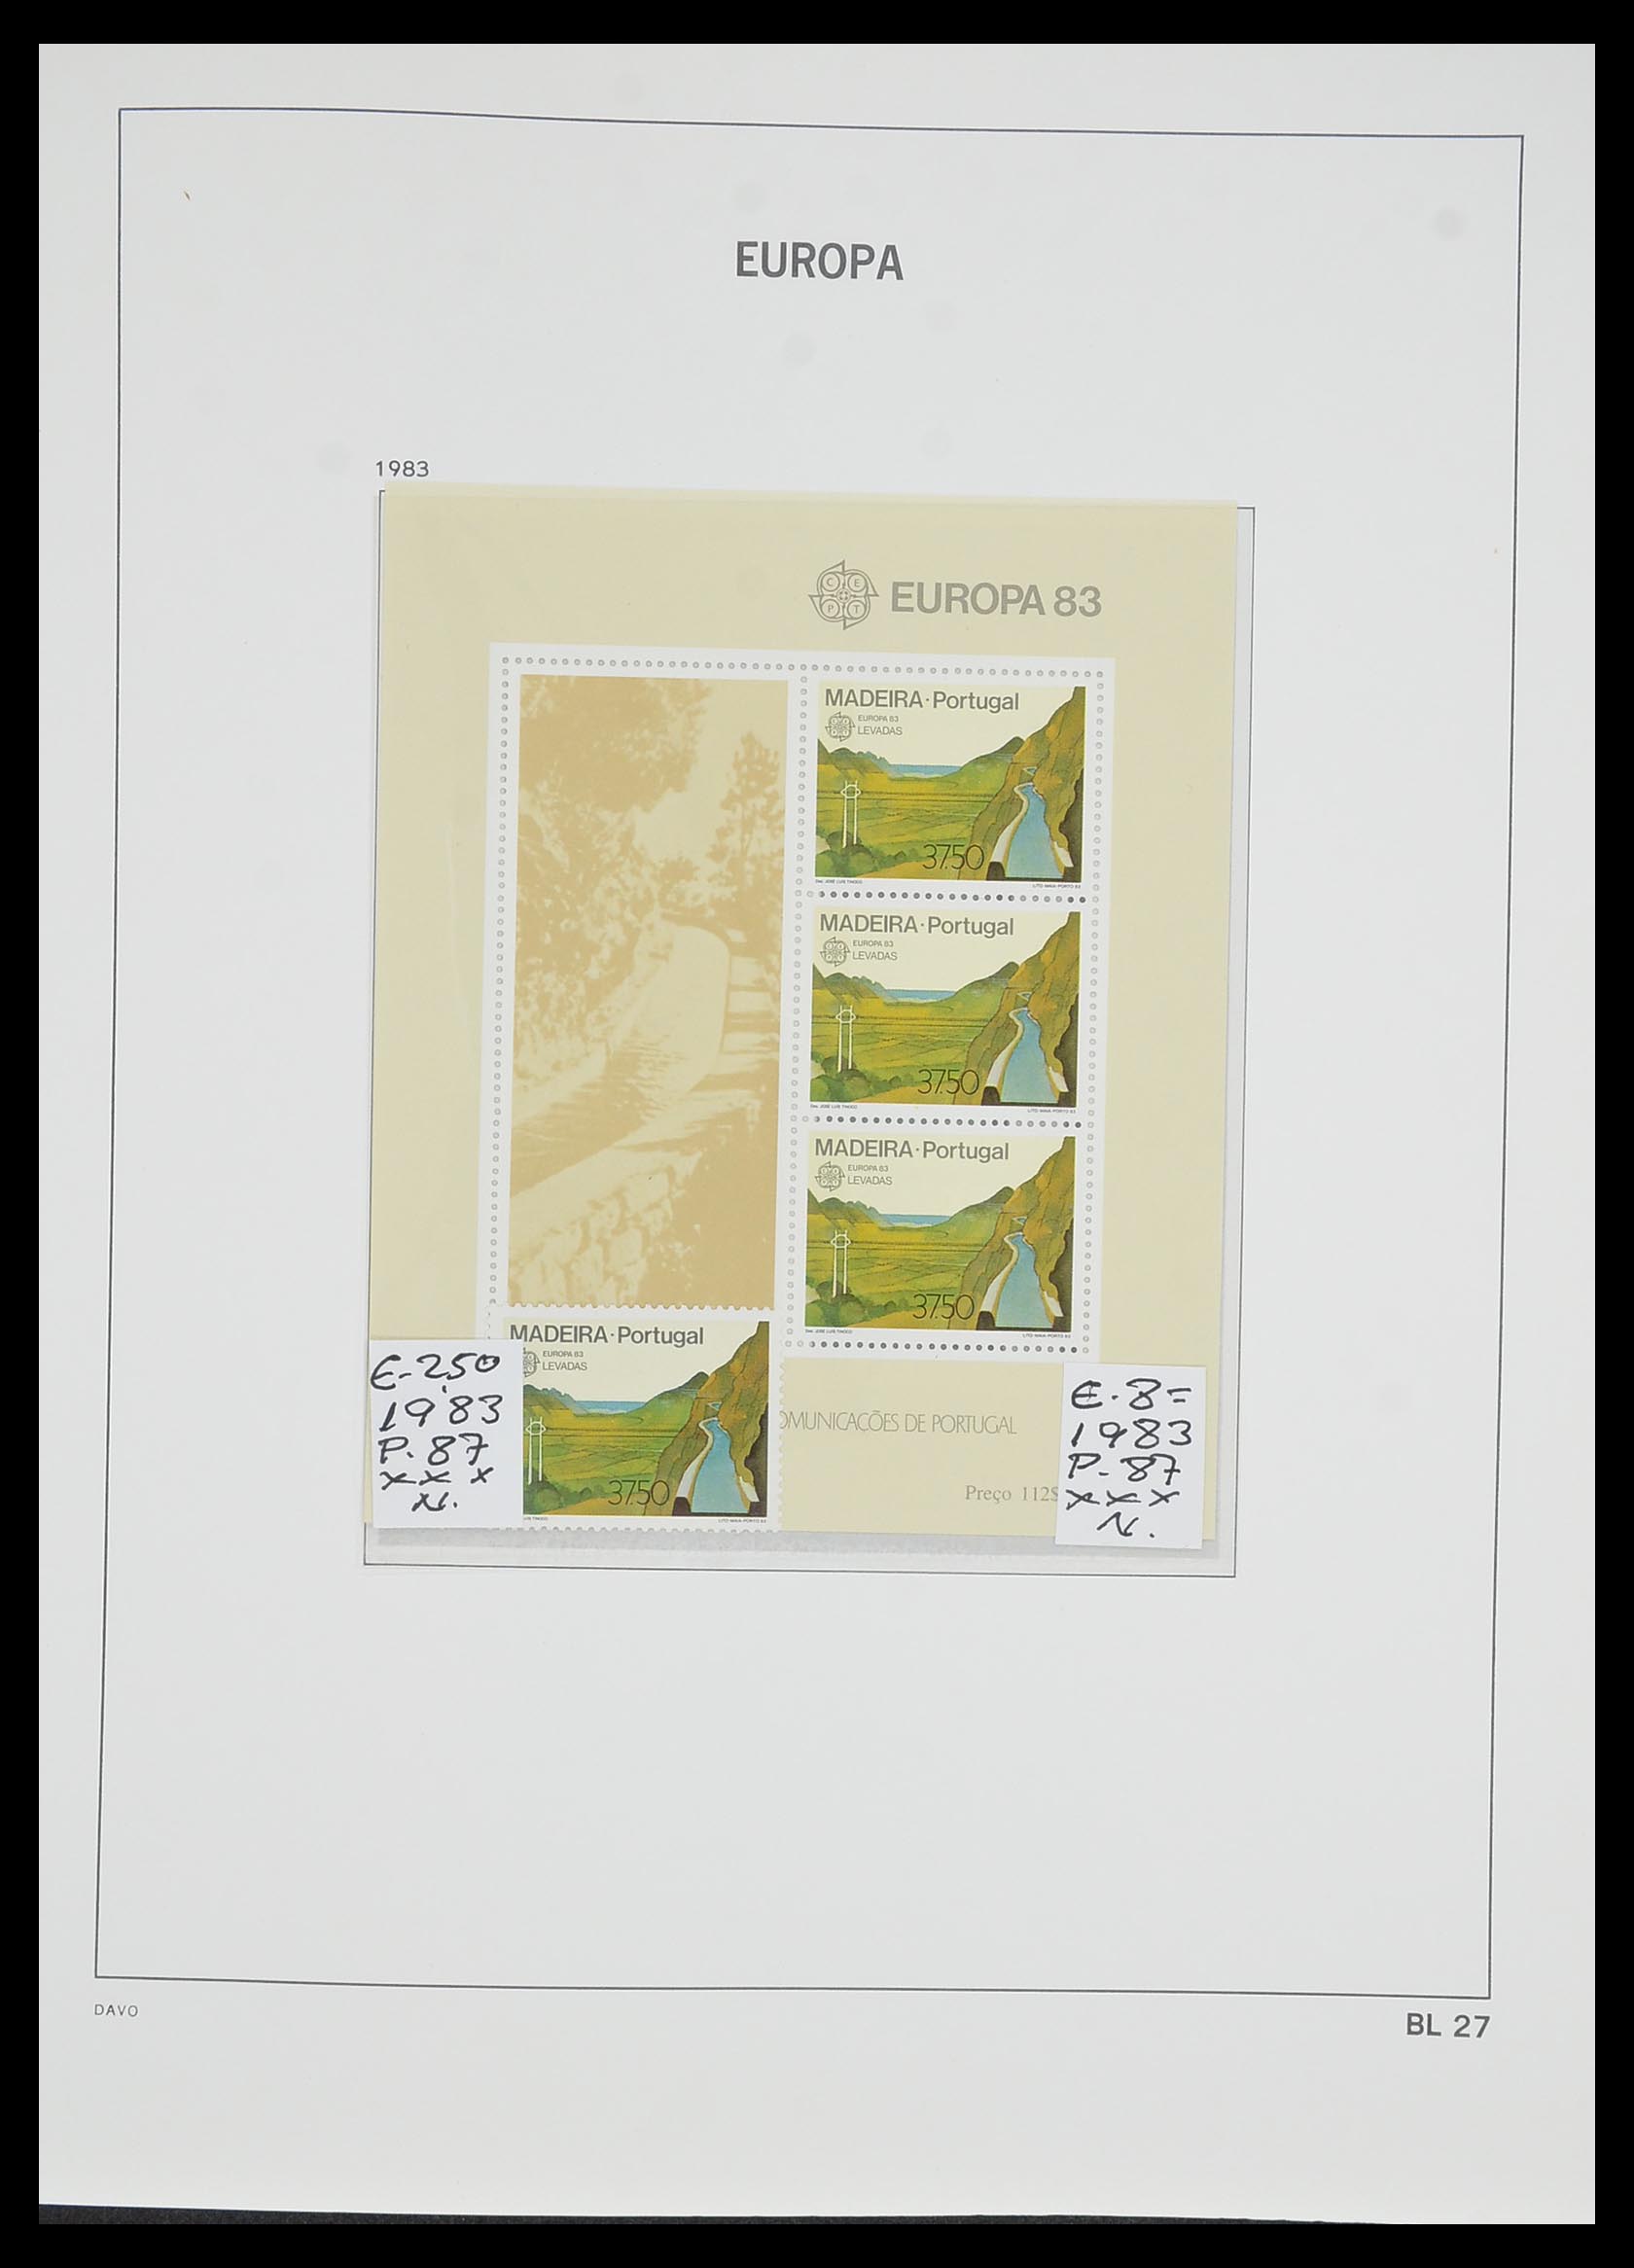 33985 028 - Stamp collection 33985 Europa CEPT souvenir sheets 1974-2014.